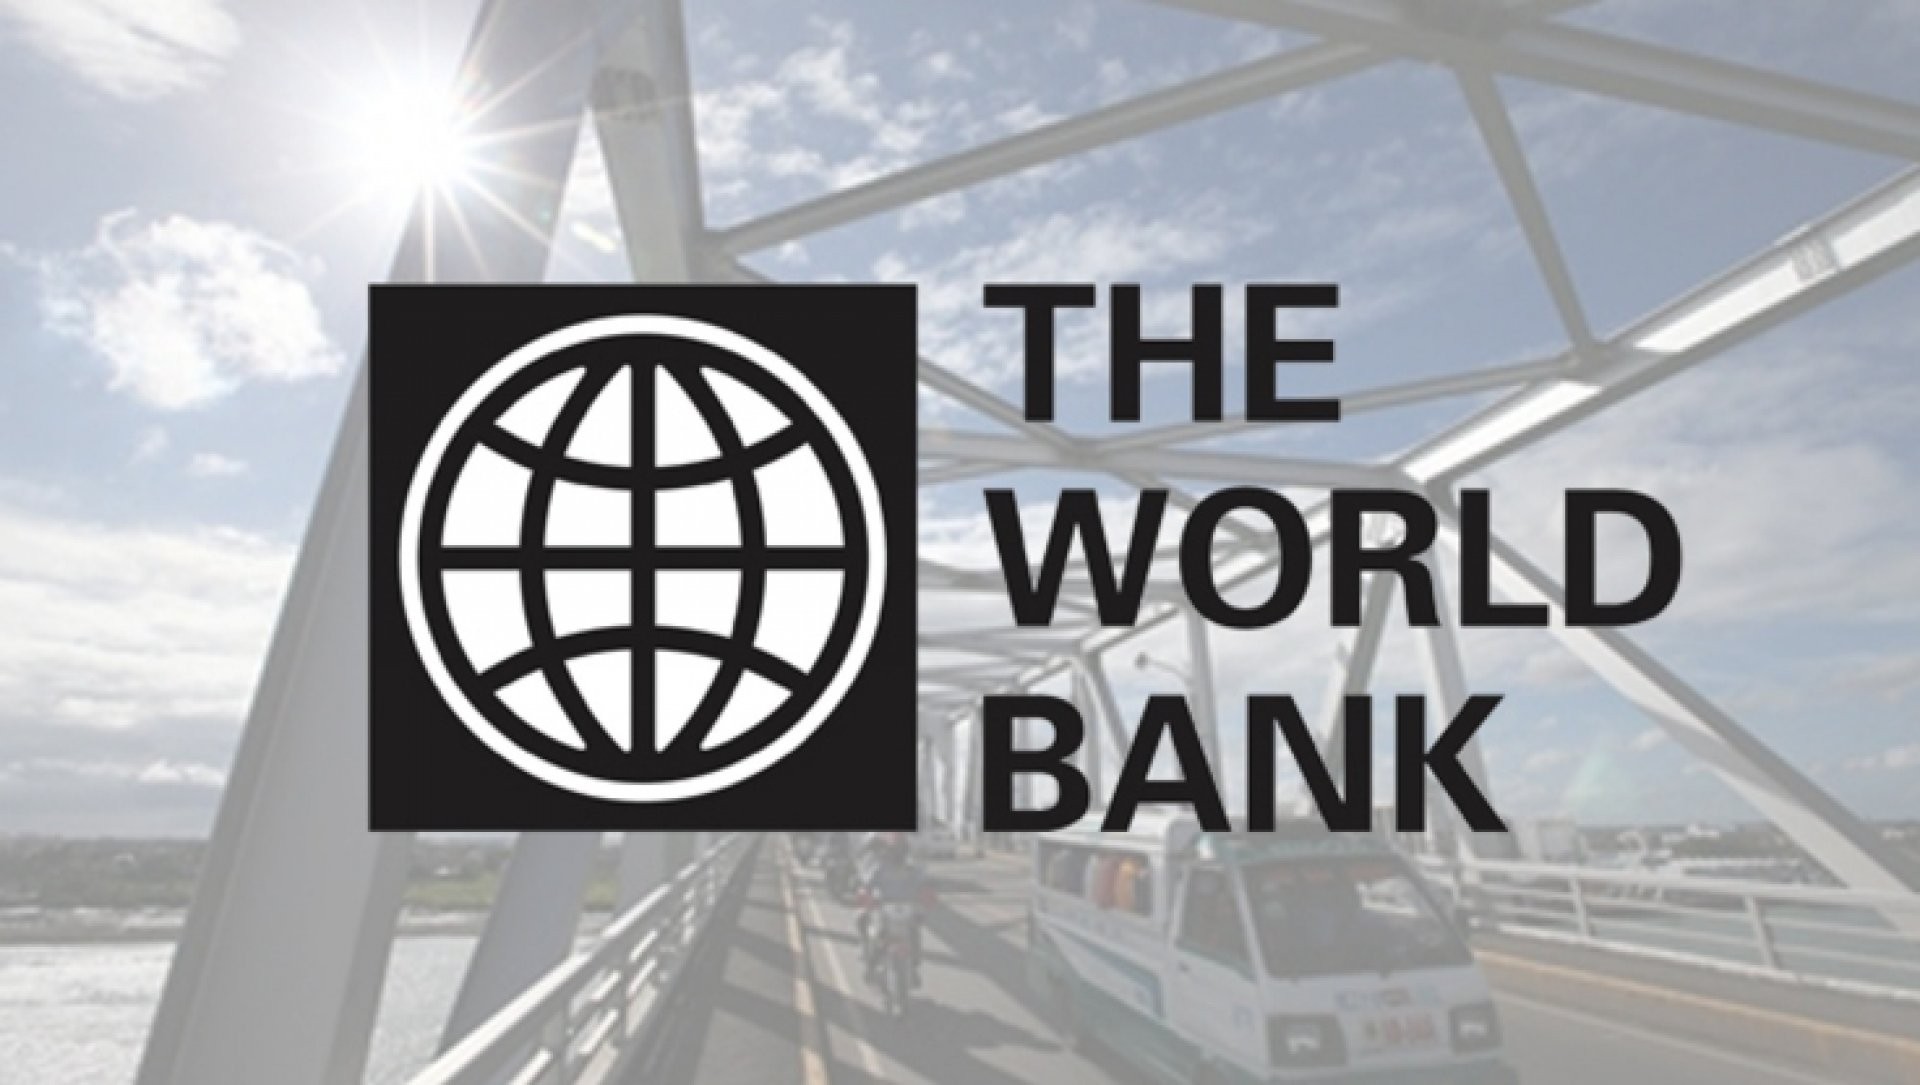 Фонд всемирный банк. Всемирный банк. Логотип Всемирного банка. Всемирный банк (мировой банк). Всемирный банк иллюстрация.